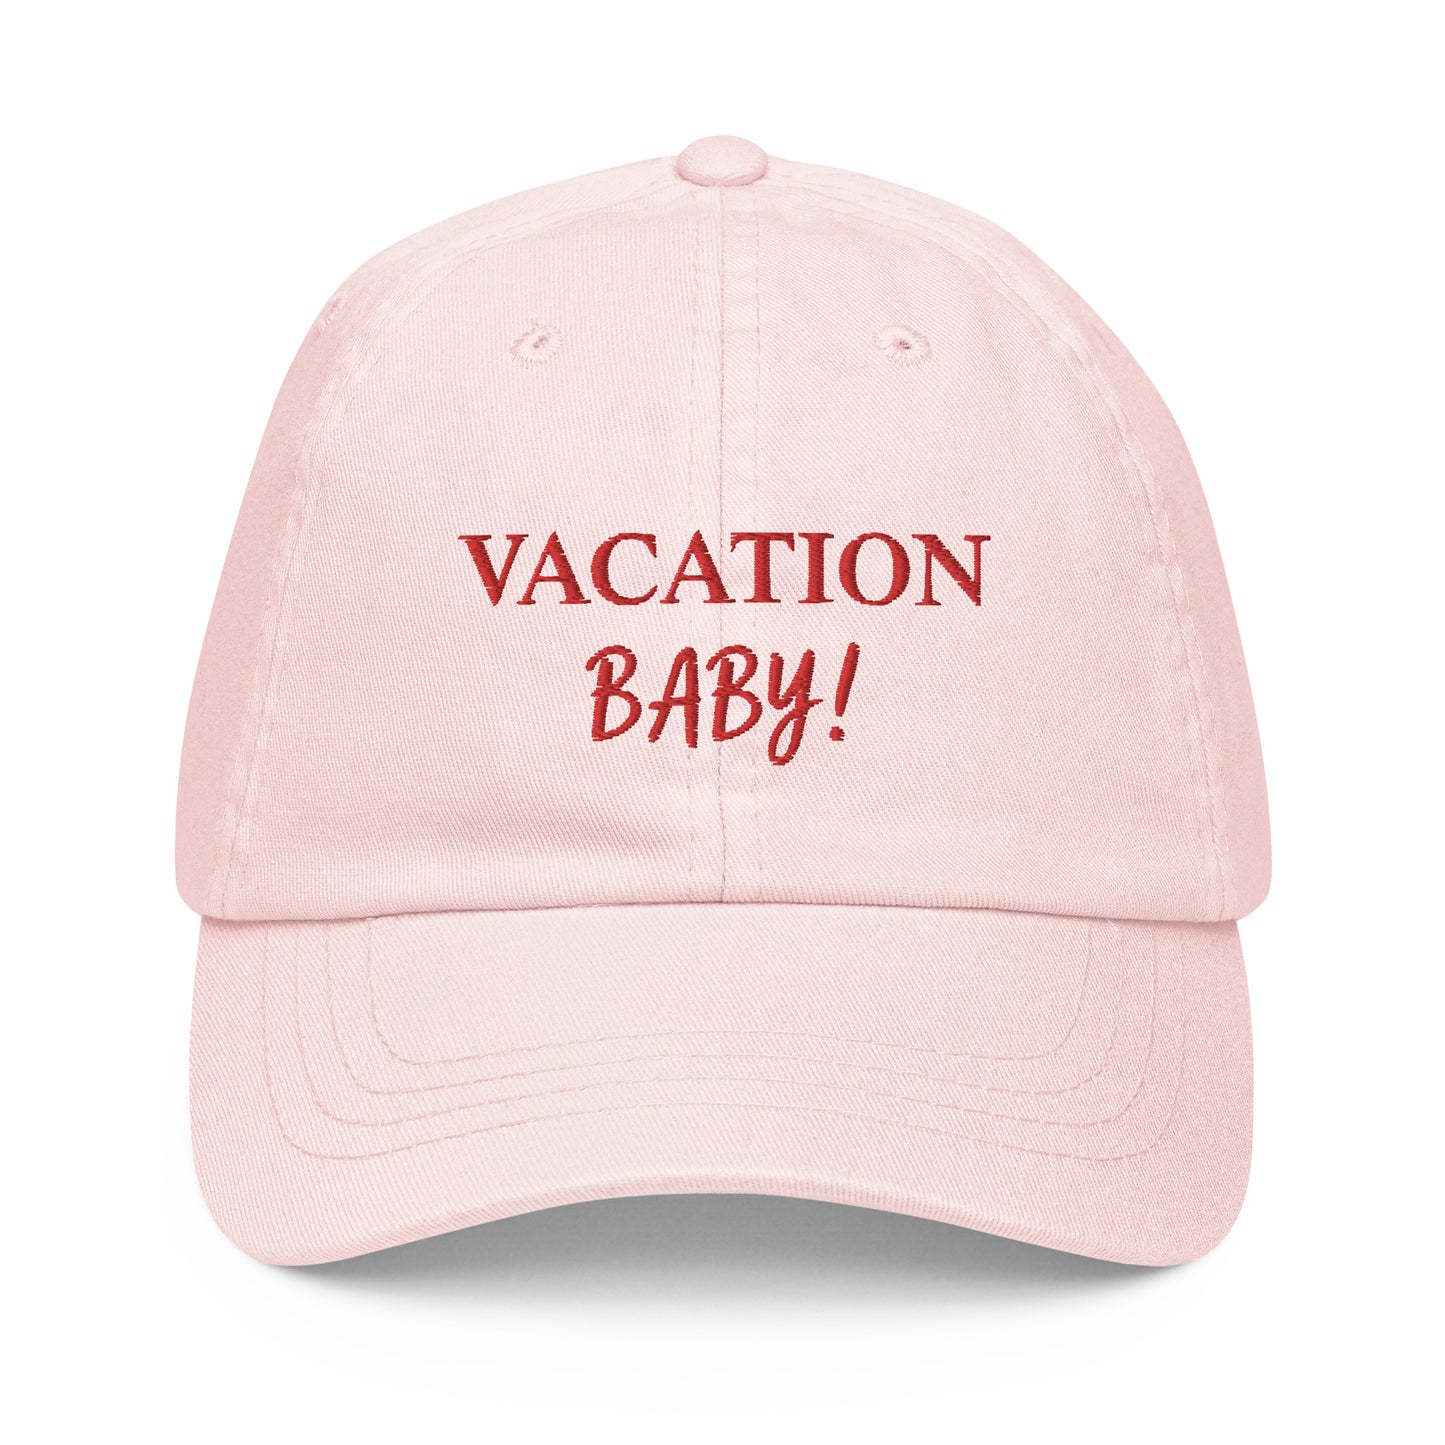 Vacation Baby! Cap